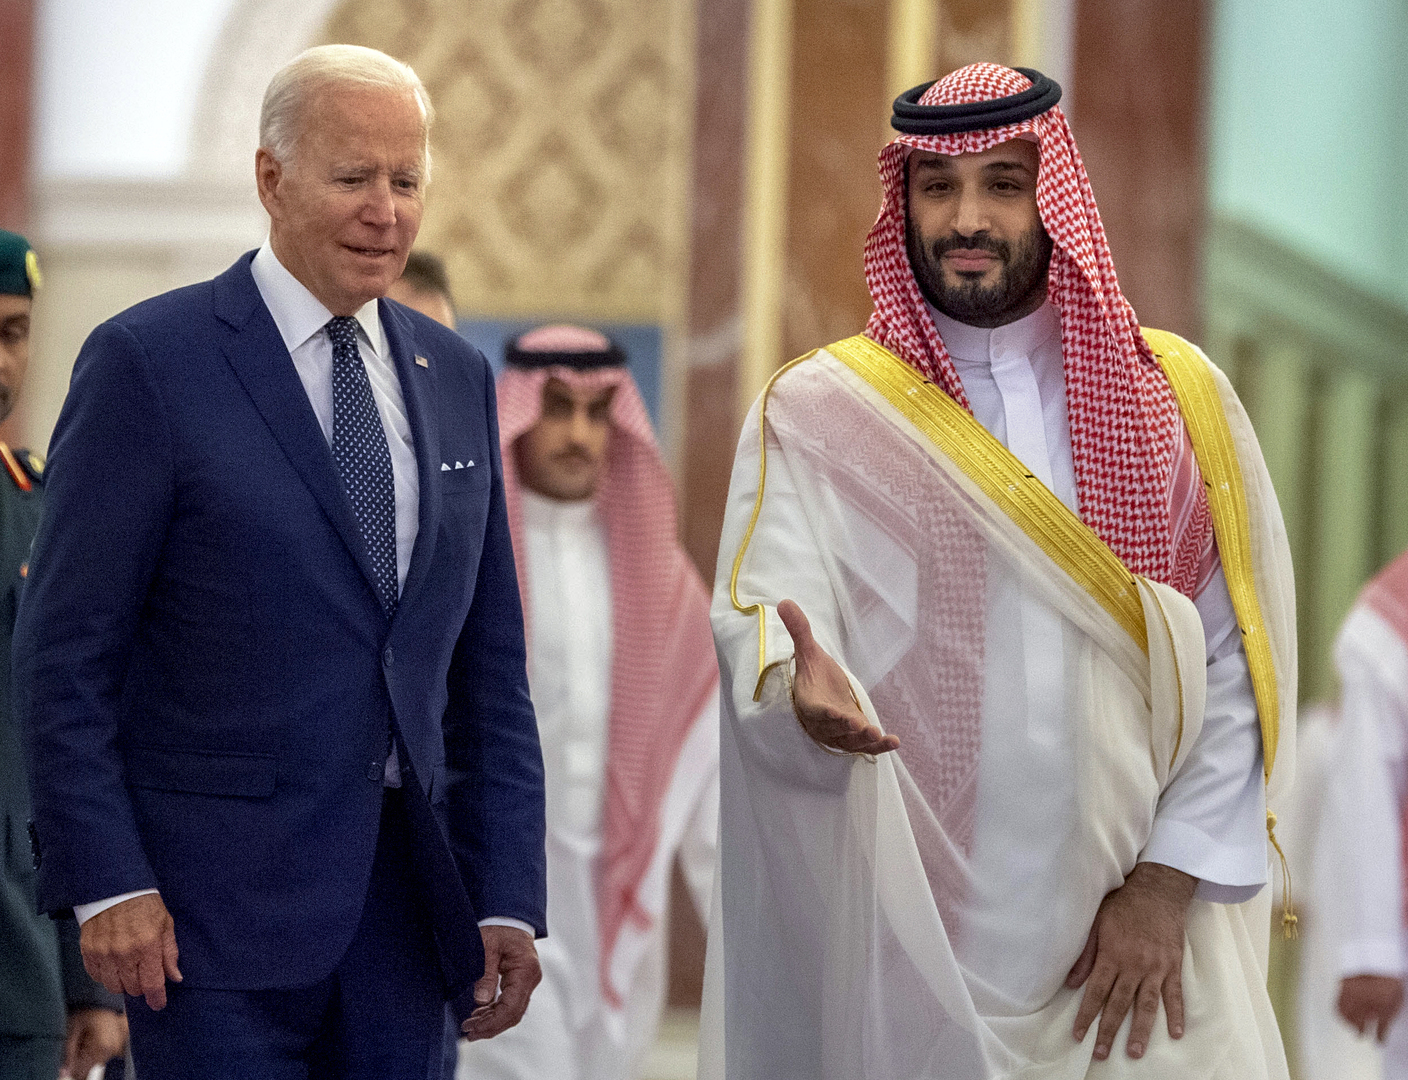 ضجة كبيرة بعد تصحيح البيت الأبيض لما قاله بايدن عن حديثه مع الأمير محمد بن سلمان بقضية خاشقجي